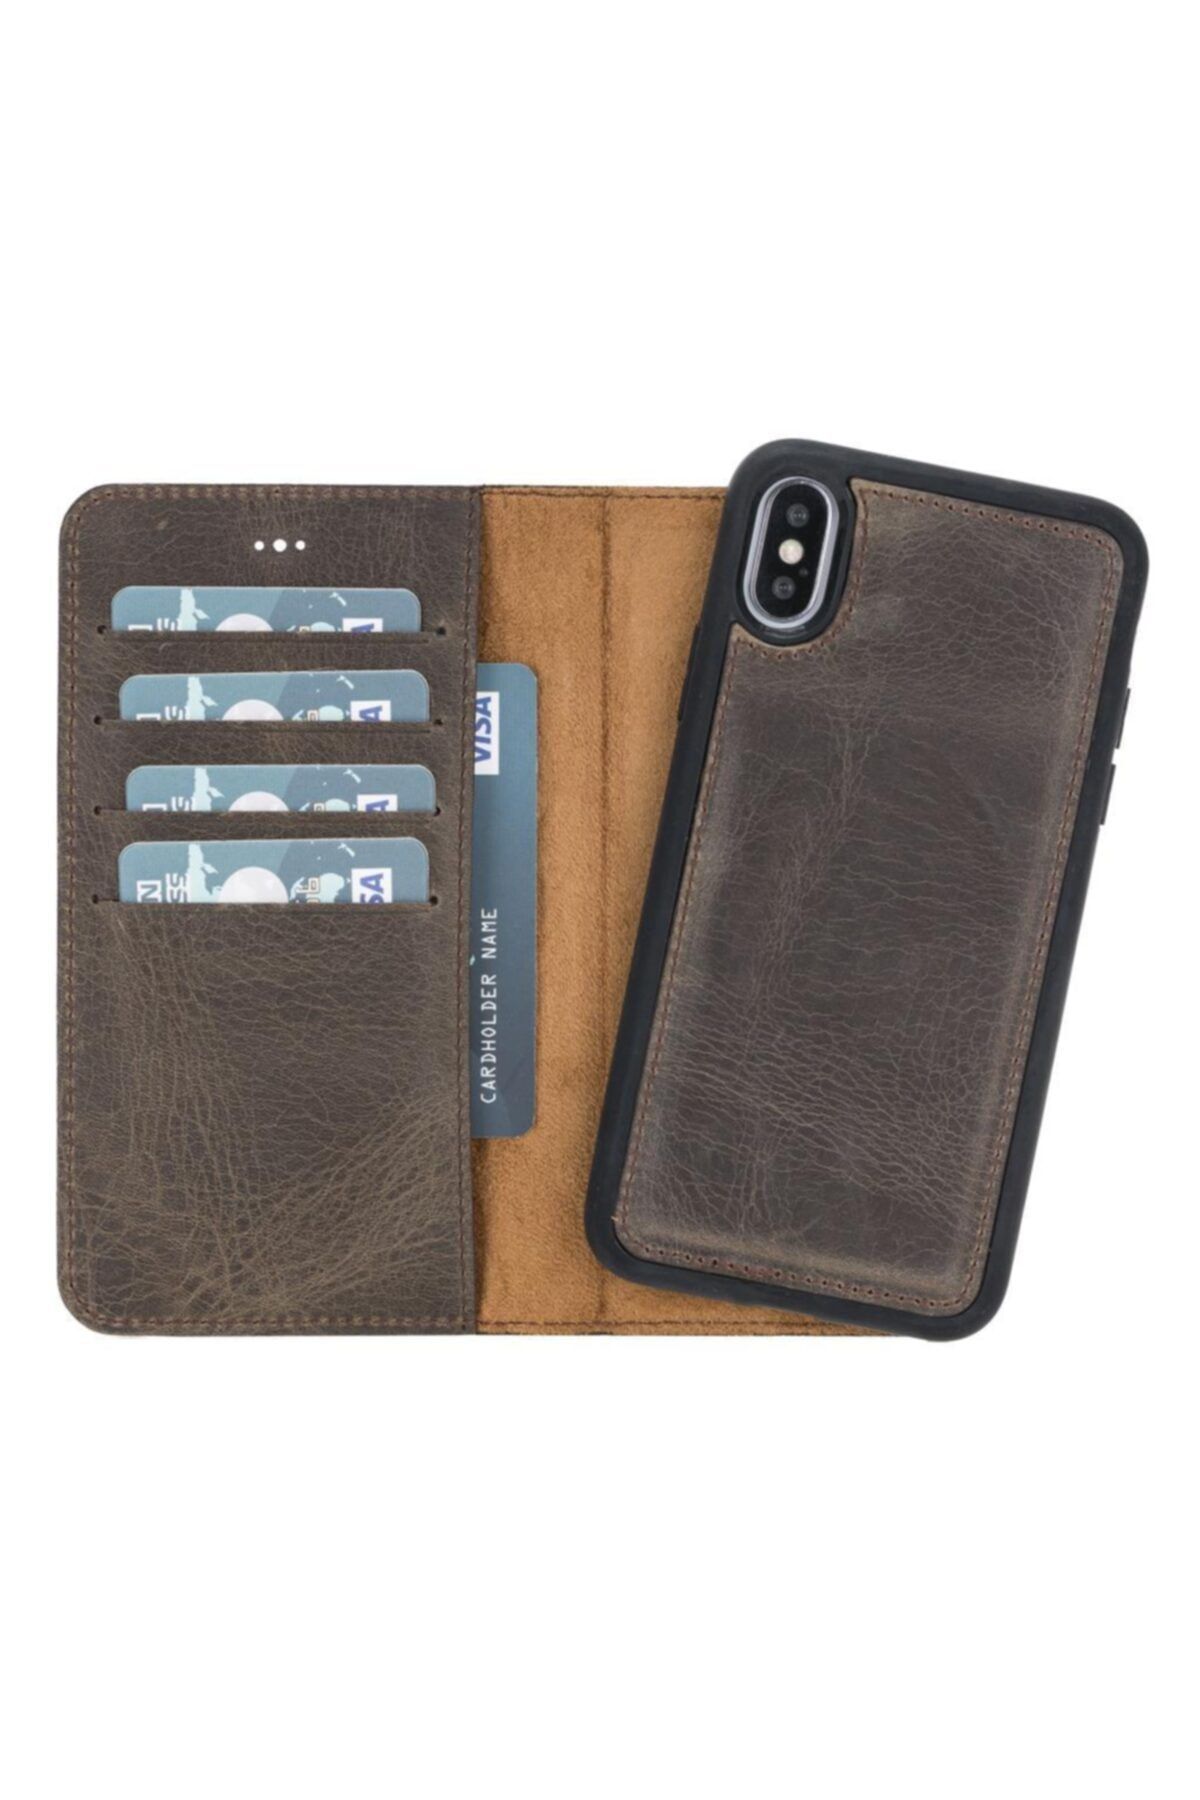 Plm Magic Wallet Deri Telefon Kılıfı Iphone X-xs Ro6 Kahve